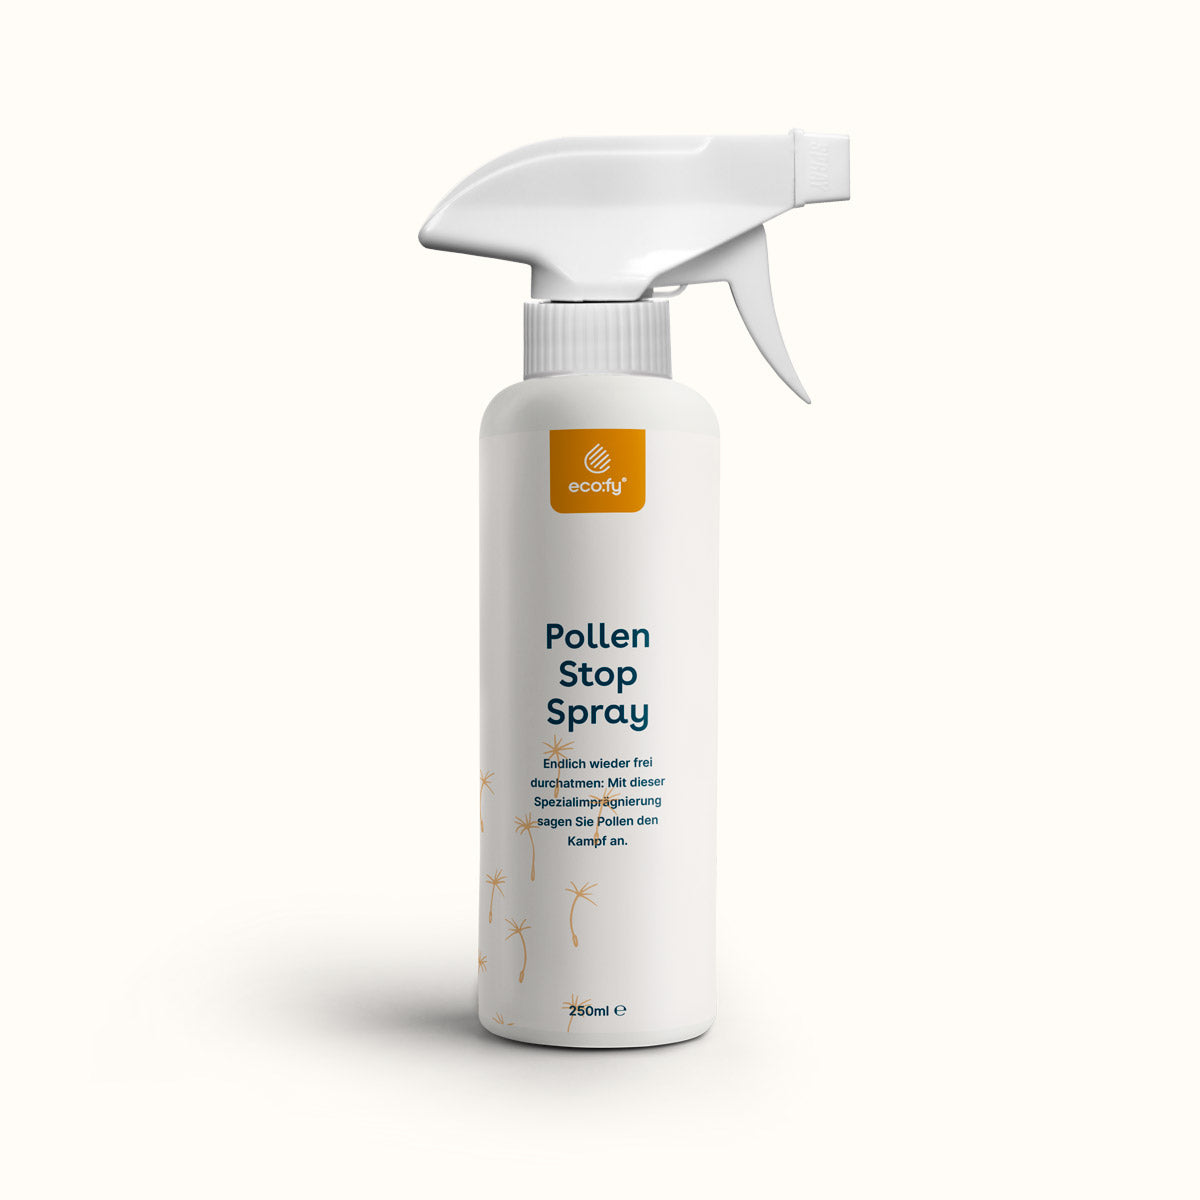 Pollen stop spray